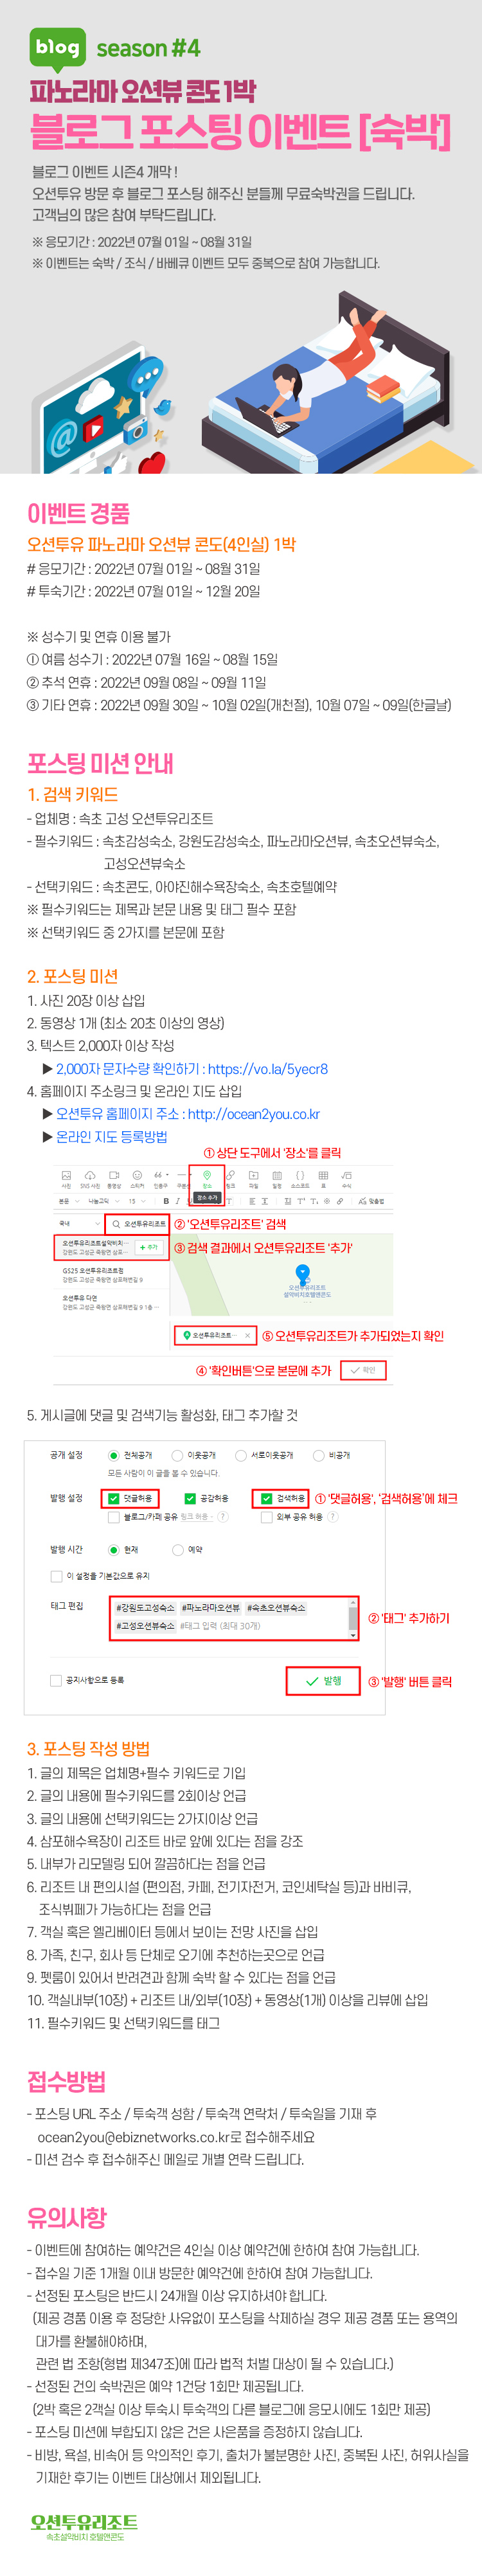 블로그 포스팅 이벤트, 블로거 전원 숙박/조식 증정!